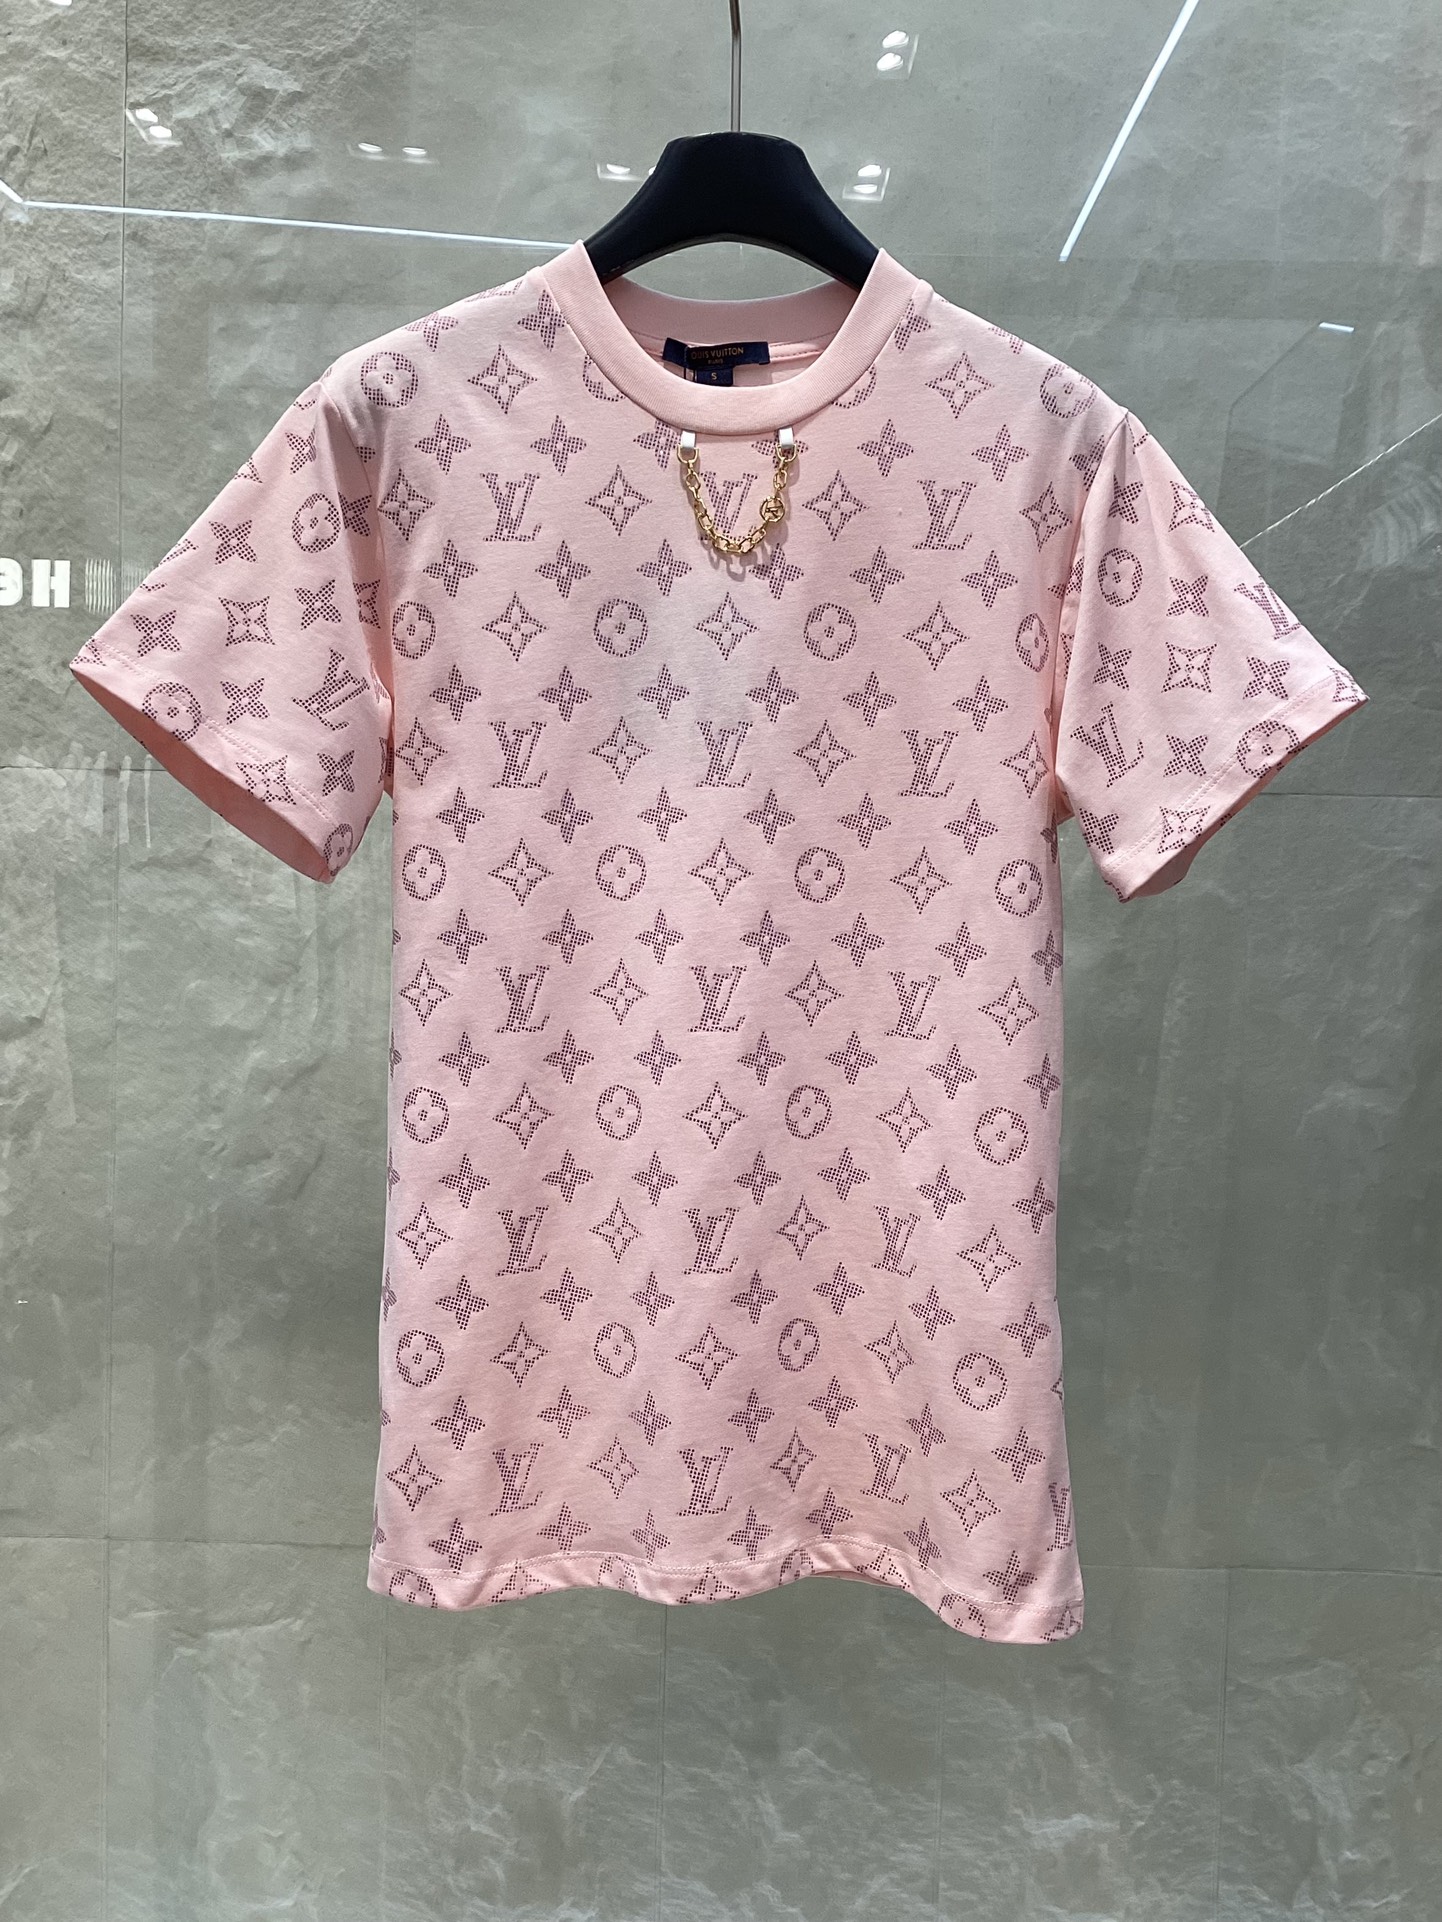 Louis Vuitton Vêtements T-Shirt Couleur abricot rose Imprimé